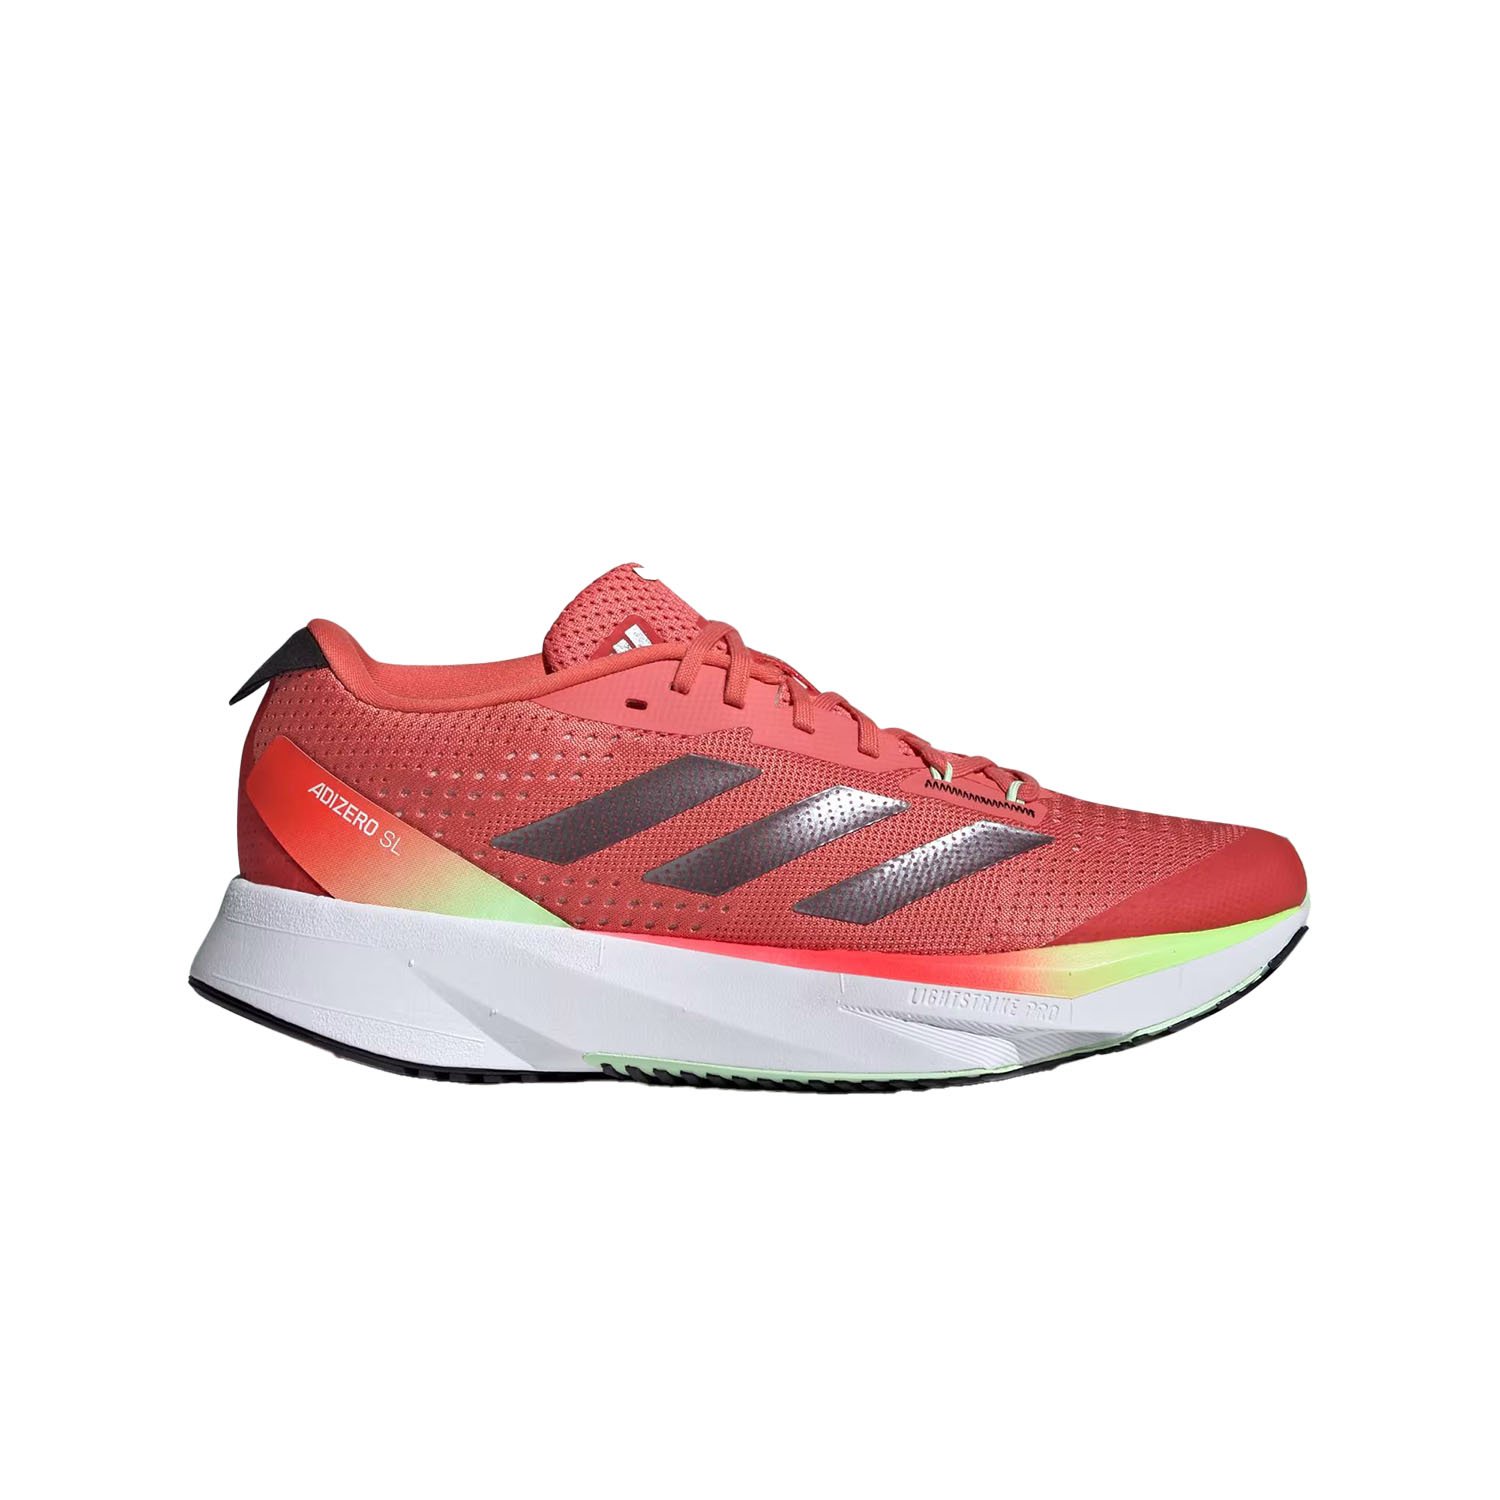 Adidas Adizero SL Kadın Yol Koşu Ayakkabısı - Renkli - 1